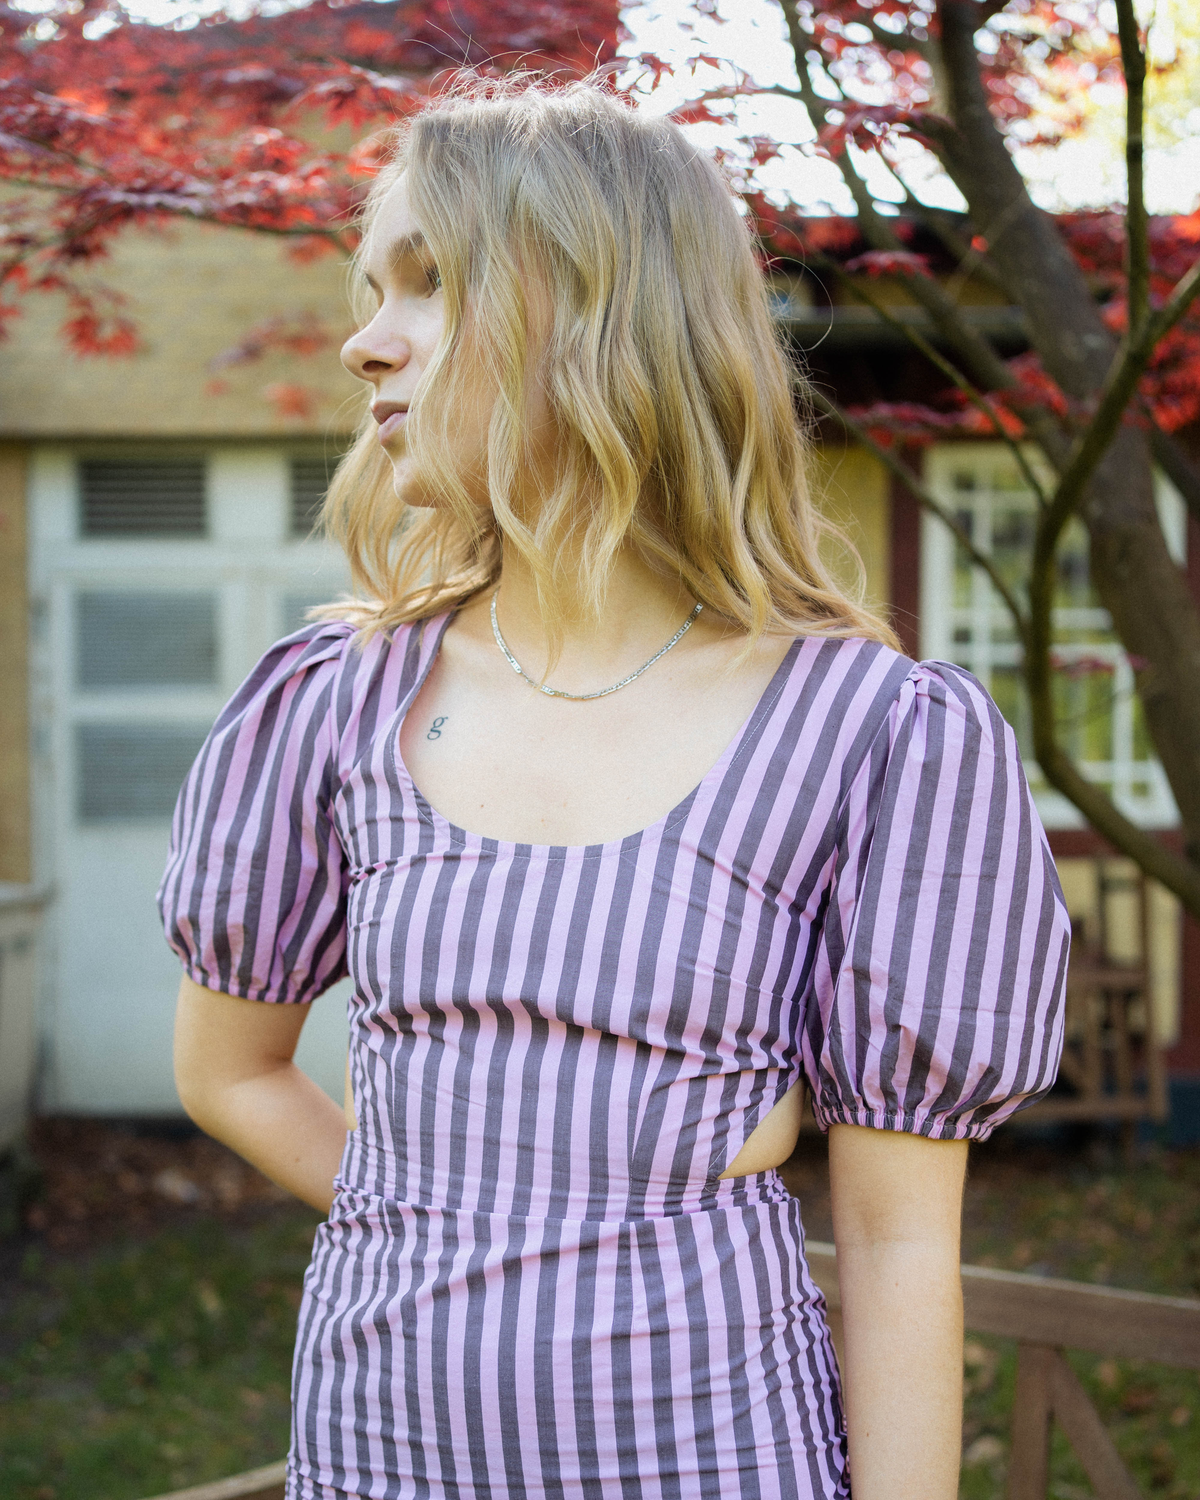 Stripe Cotton Cutout Dress - Bonbon